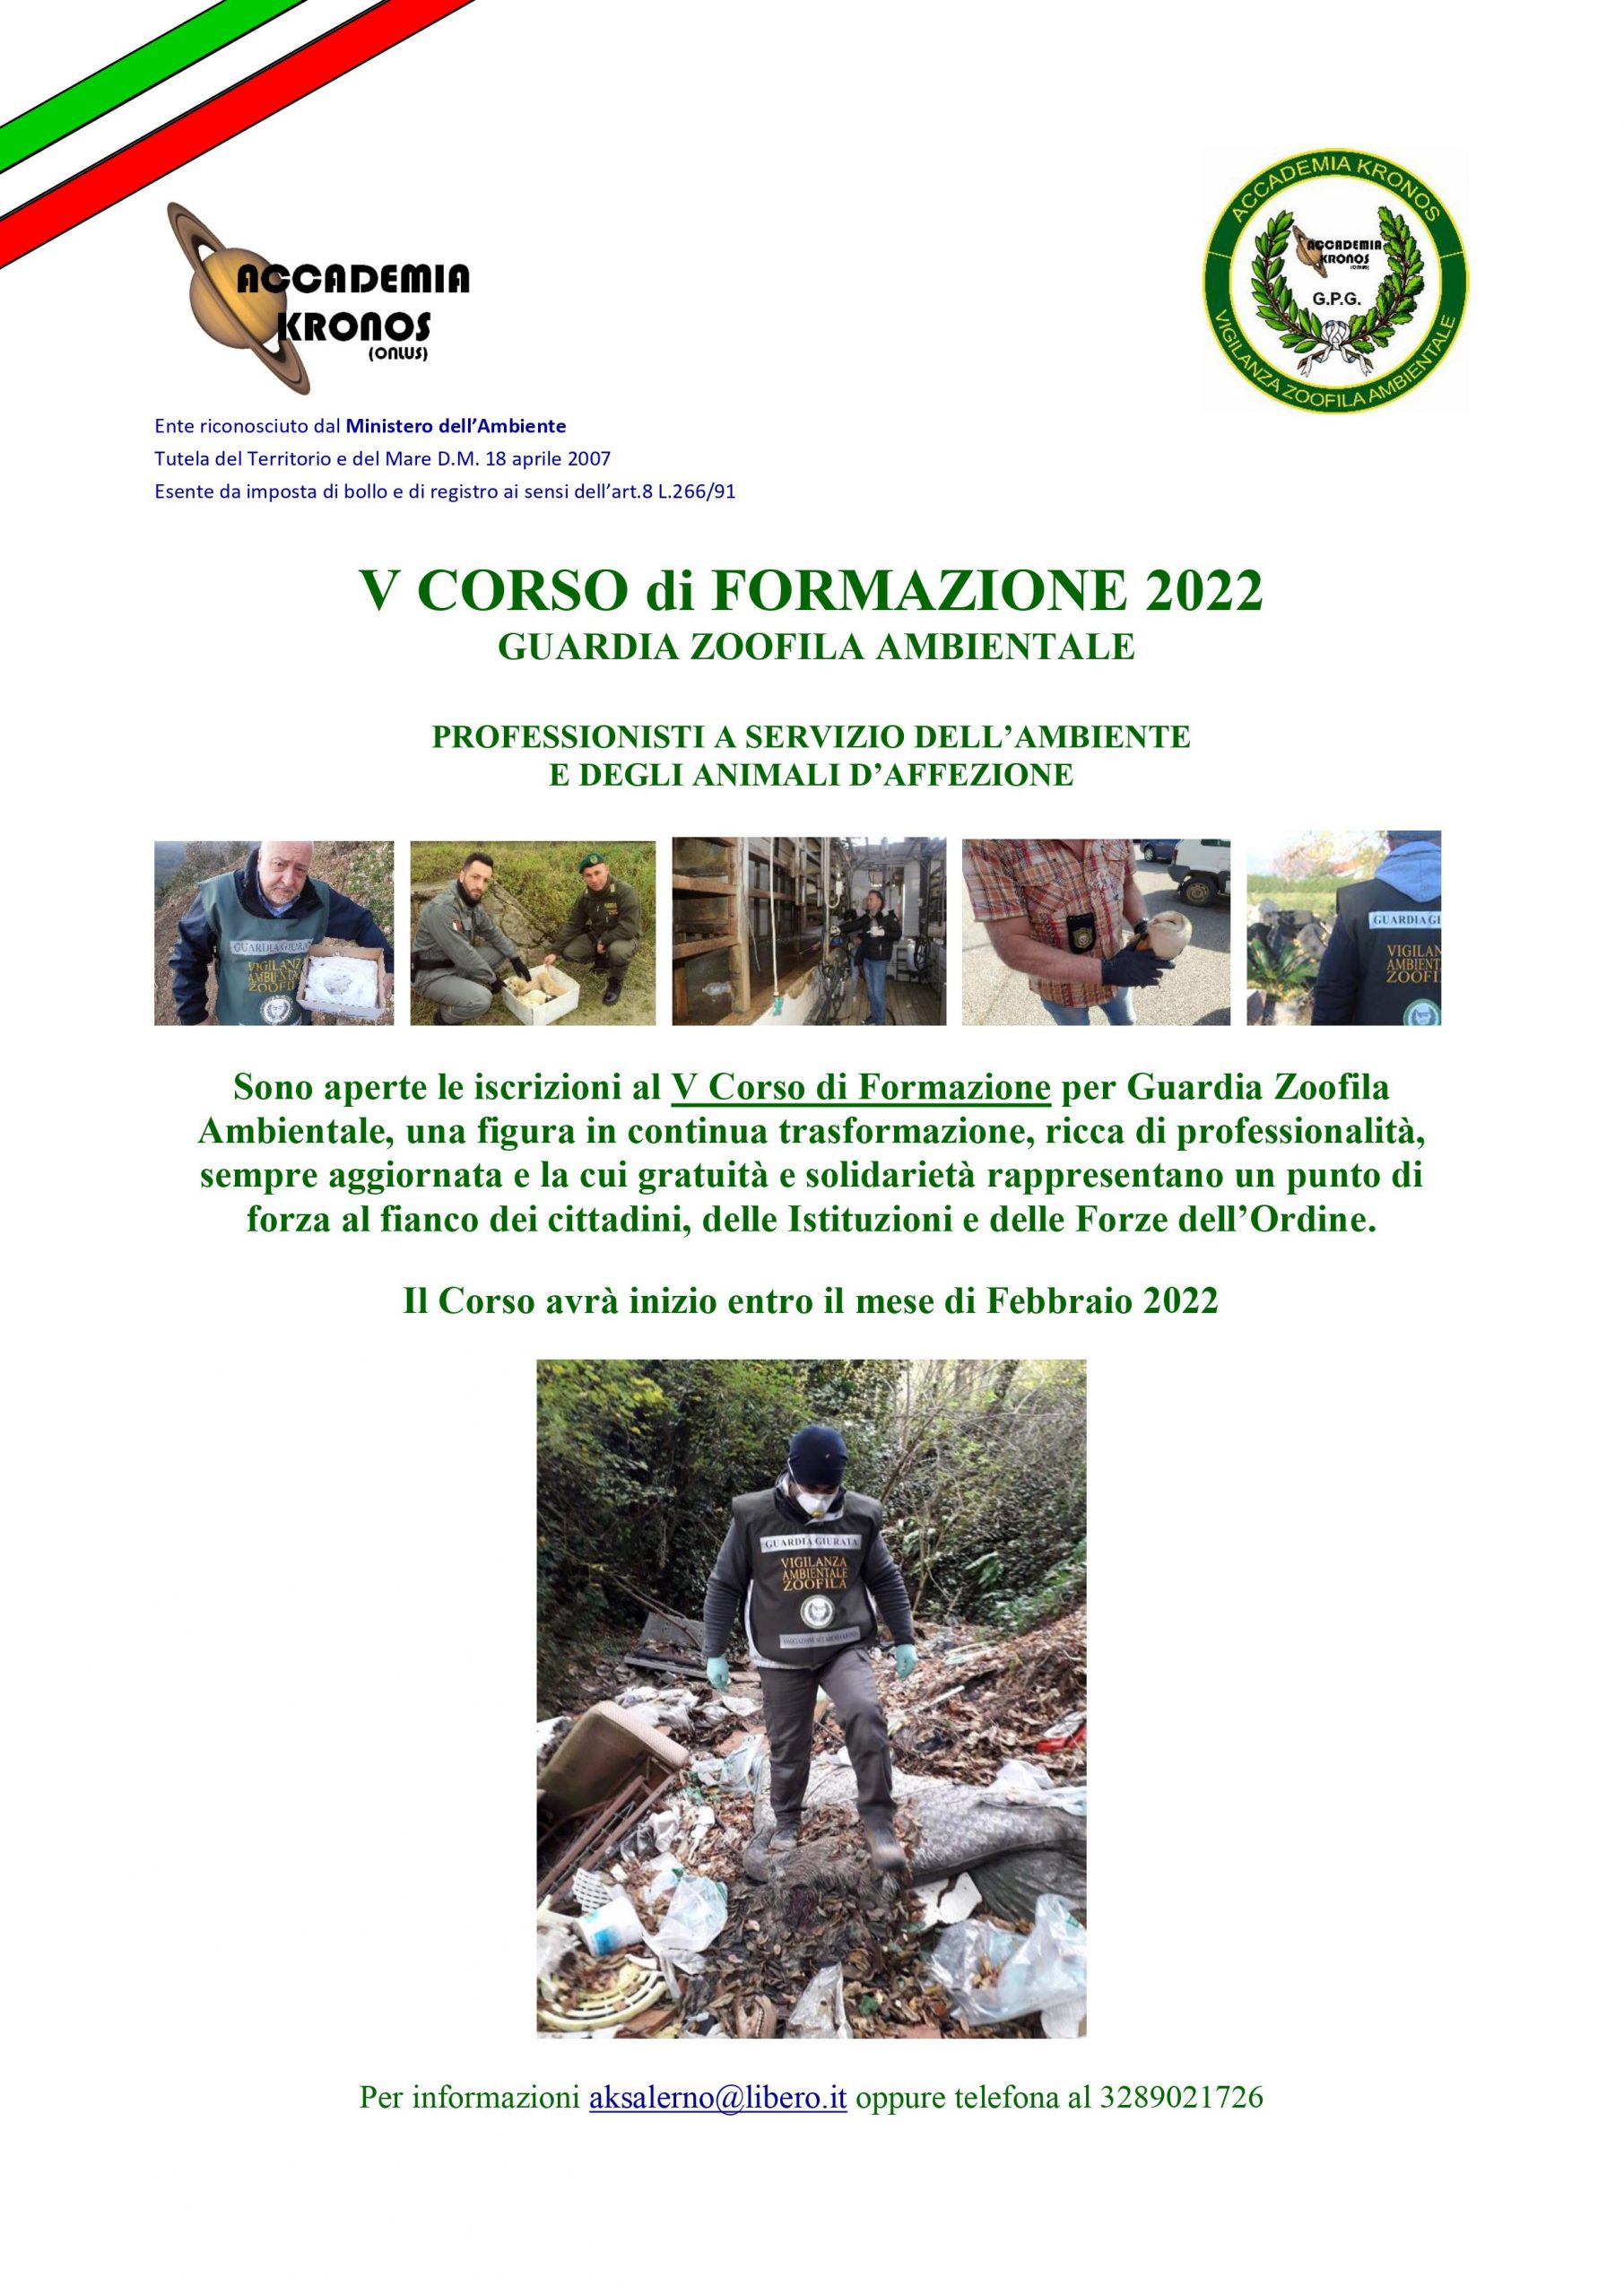 Salerno: Associazione Ambientalista Accademia Kronos, aperte iscrizioni a V Corso di Formazione per Guardie Giurate Zoofile Ambientali